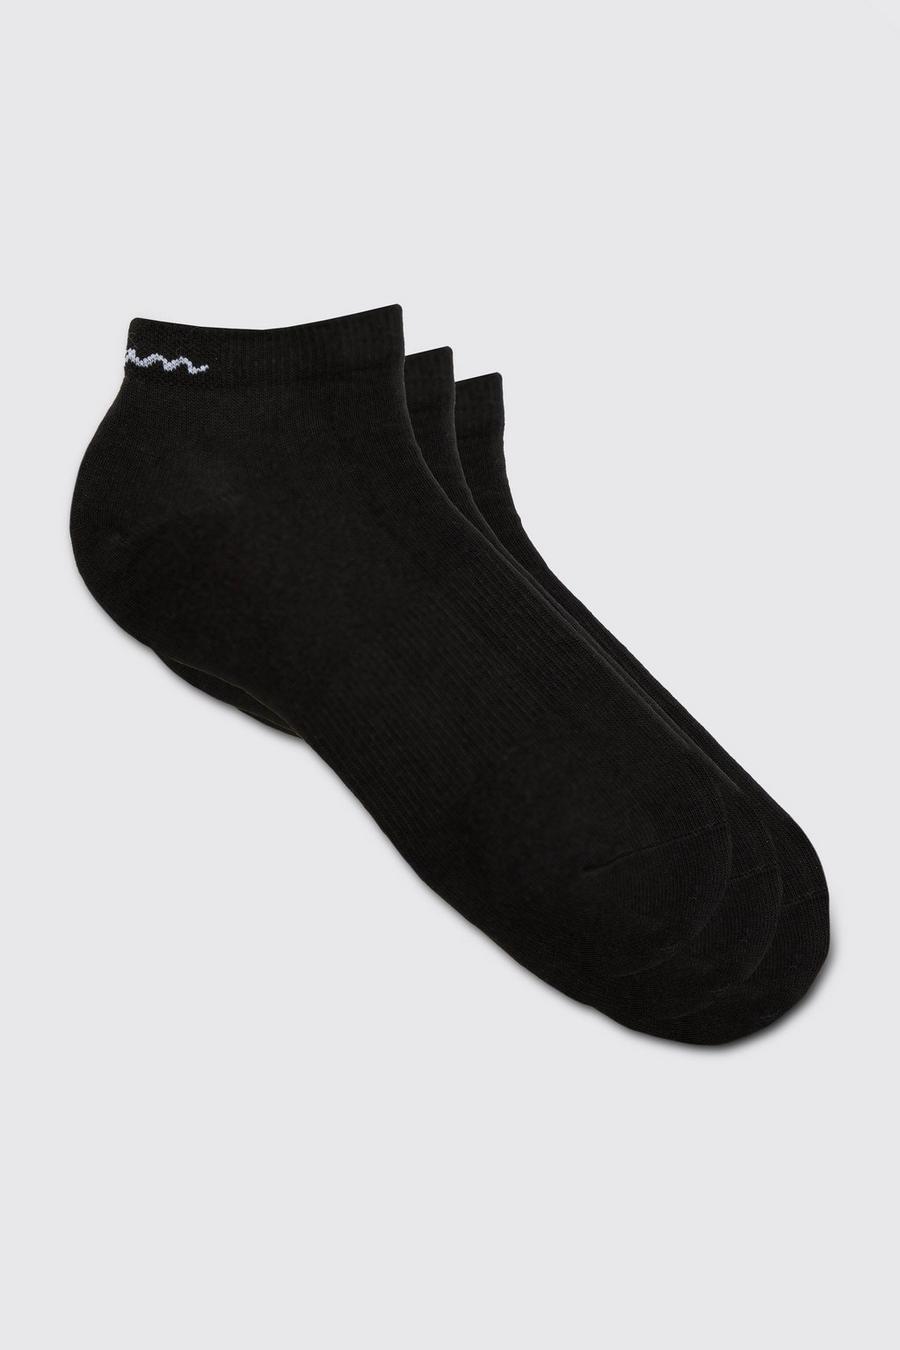 Lot de 3 paires de chaussettes - MAN, Black schwarz